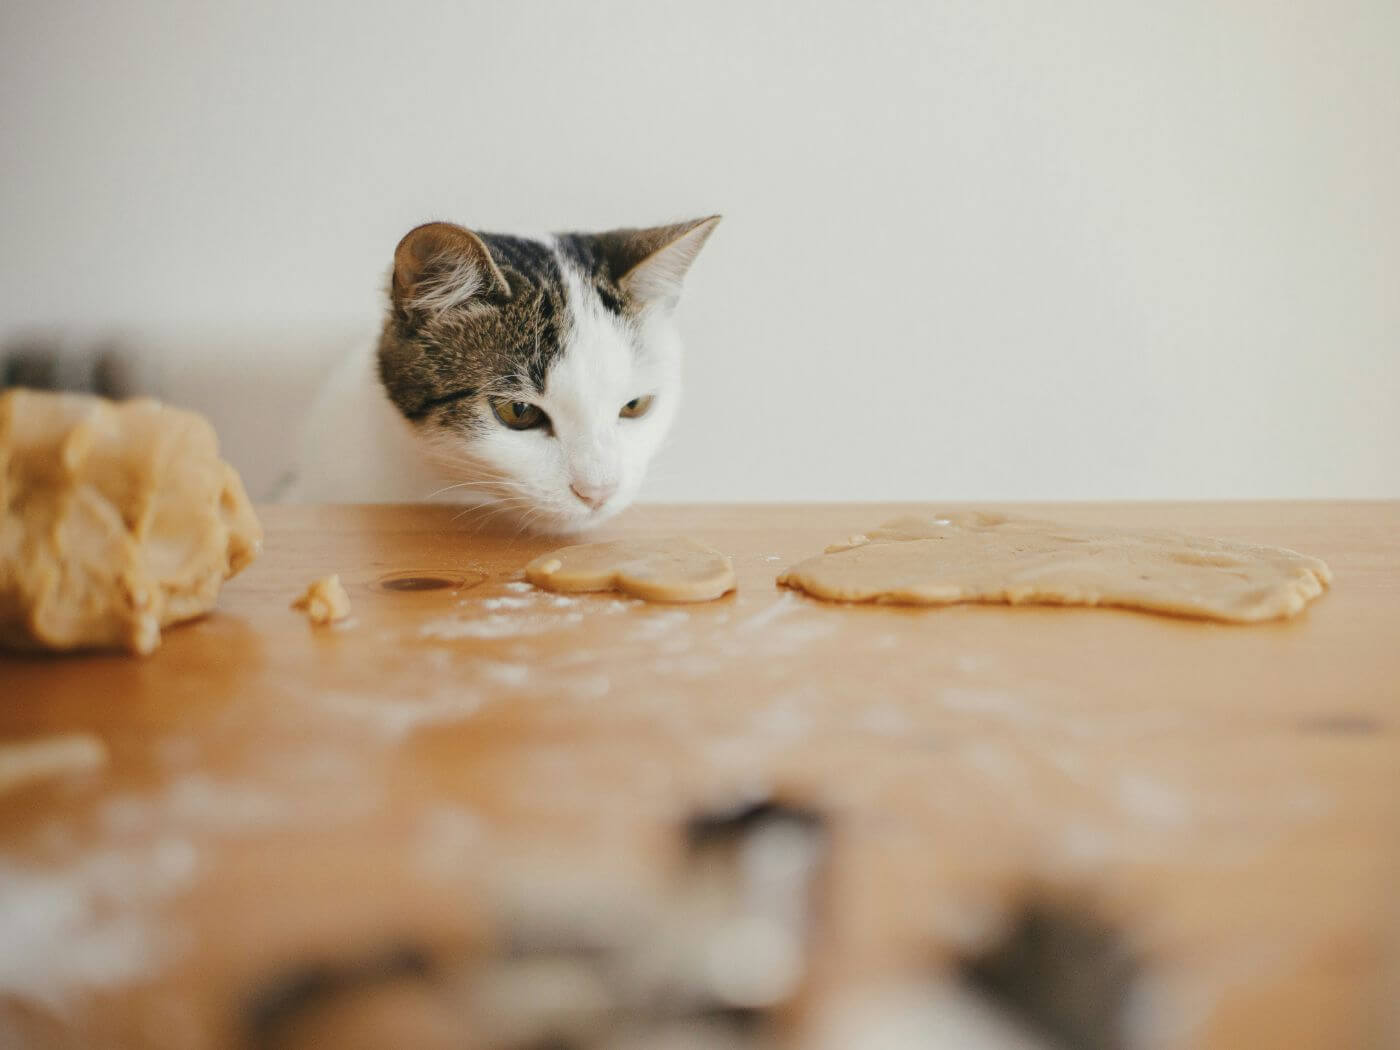 Katze sitzt am Esstisch und beobachtet einen flach ausgerollten Keksteig